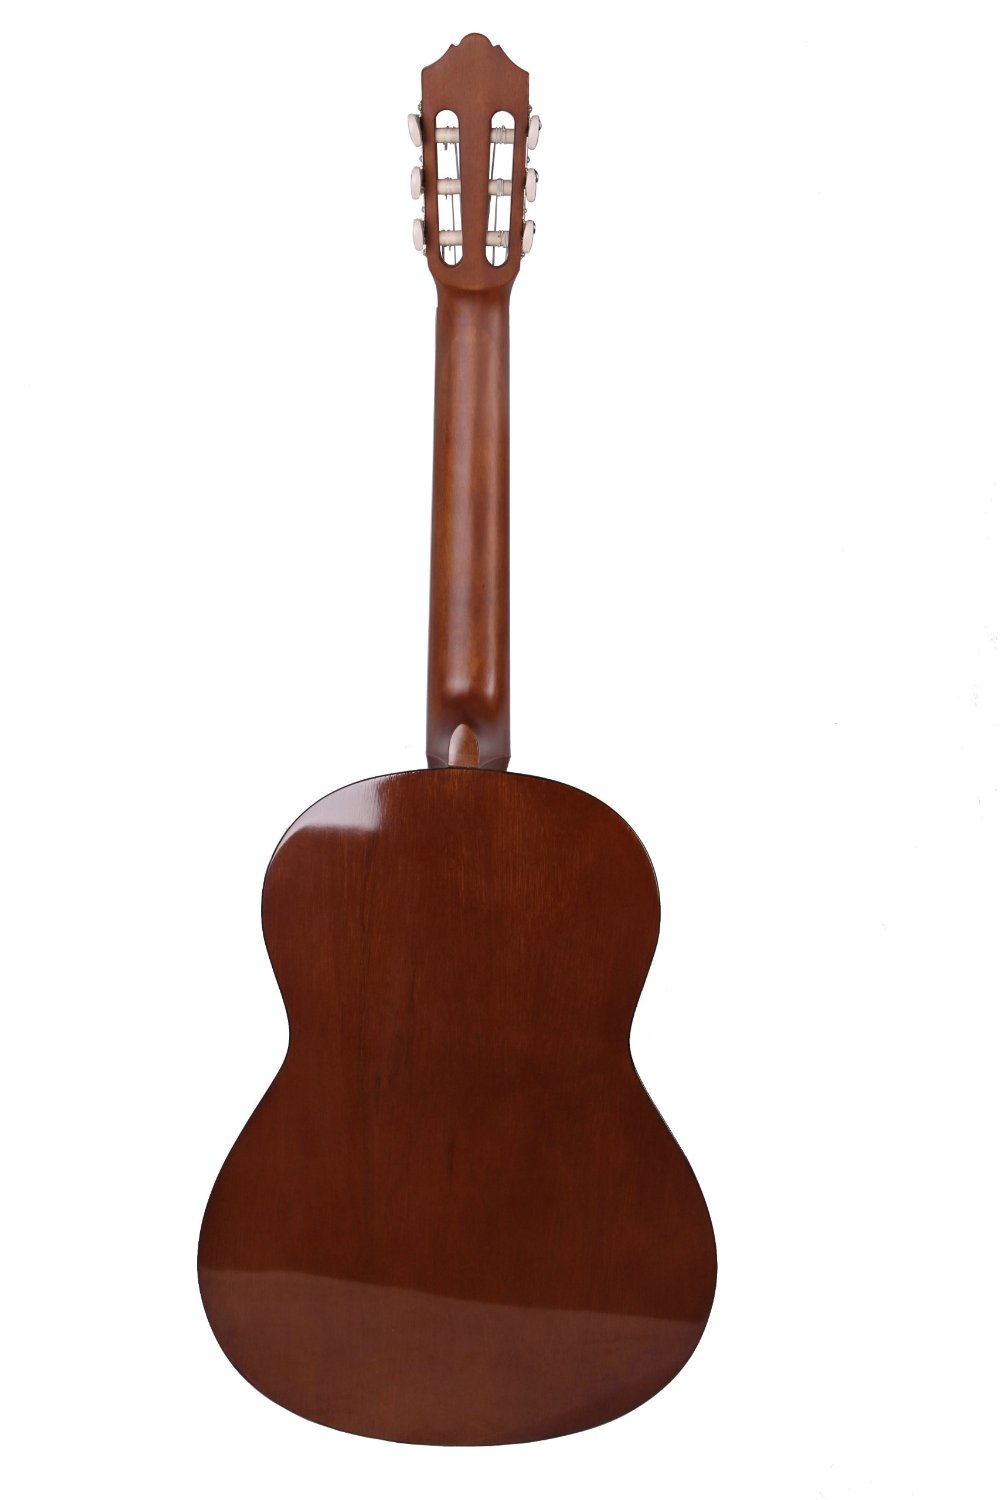 Yamaha C40ii 4/4 - Natural - Classical guitar 4/4 size - Variation 2